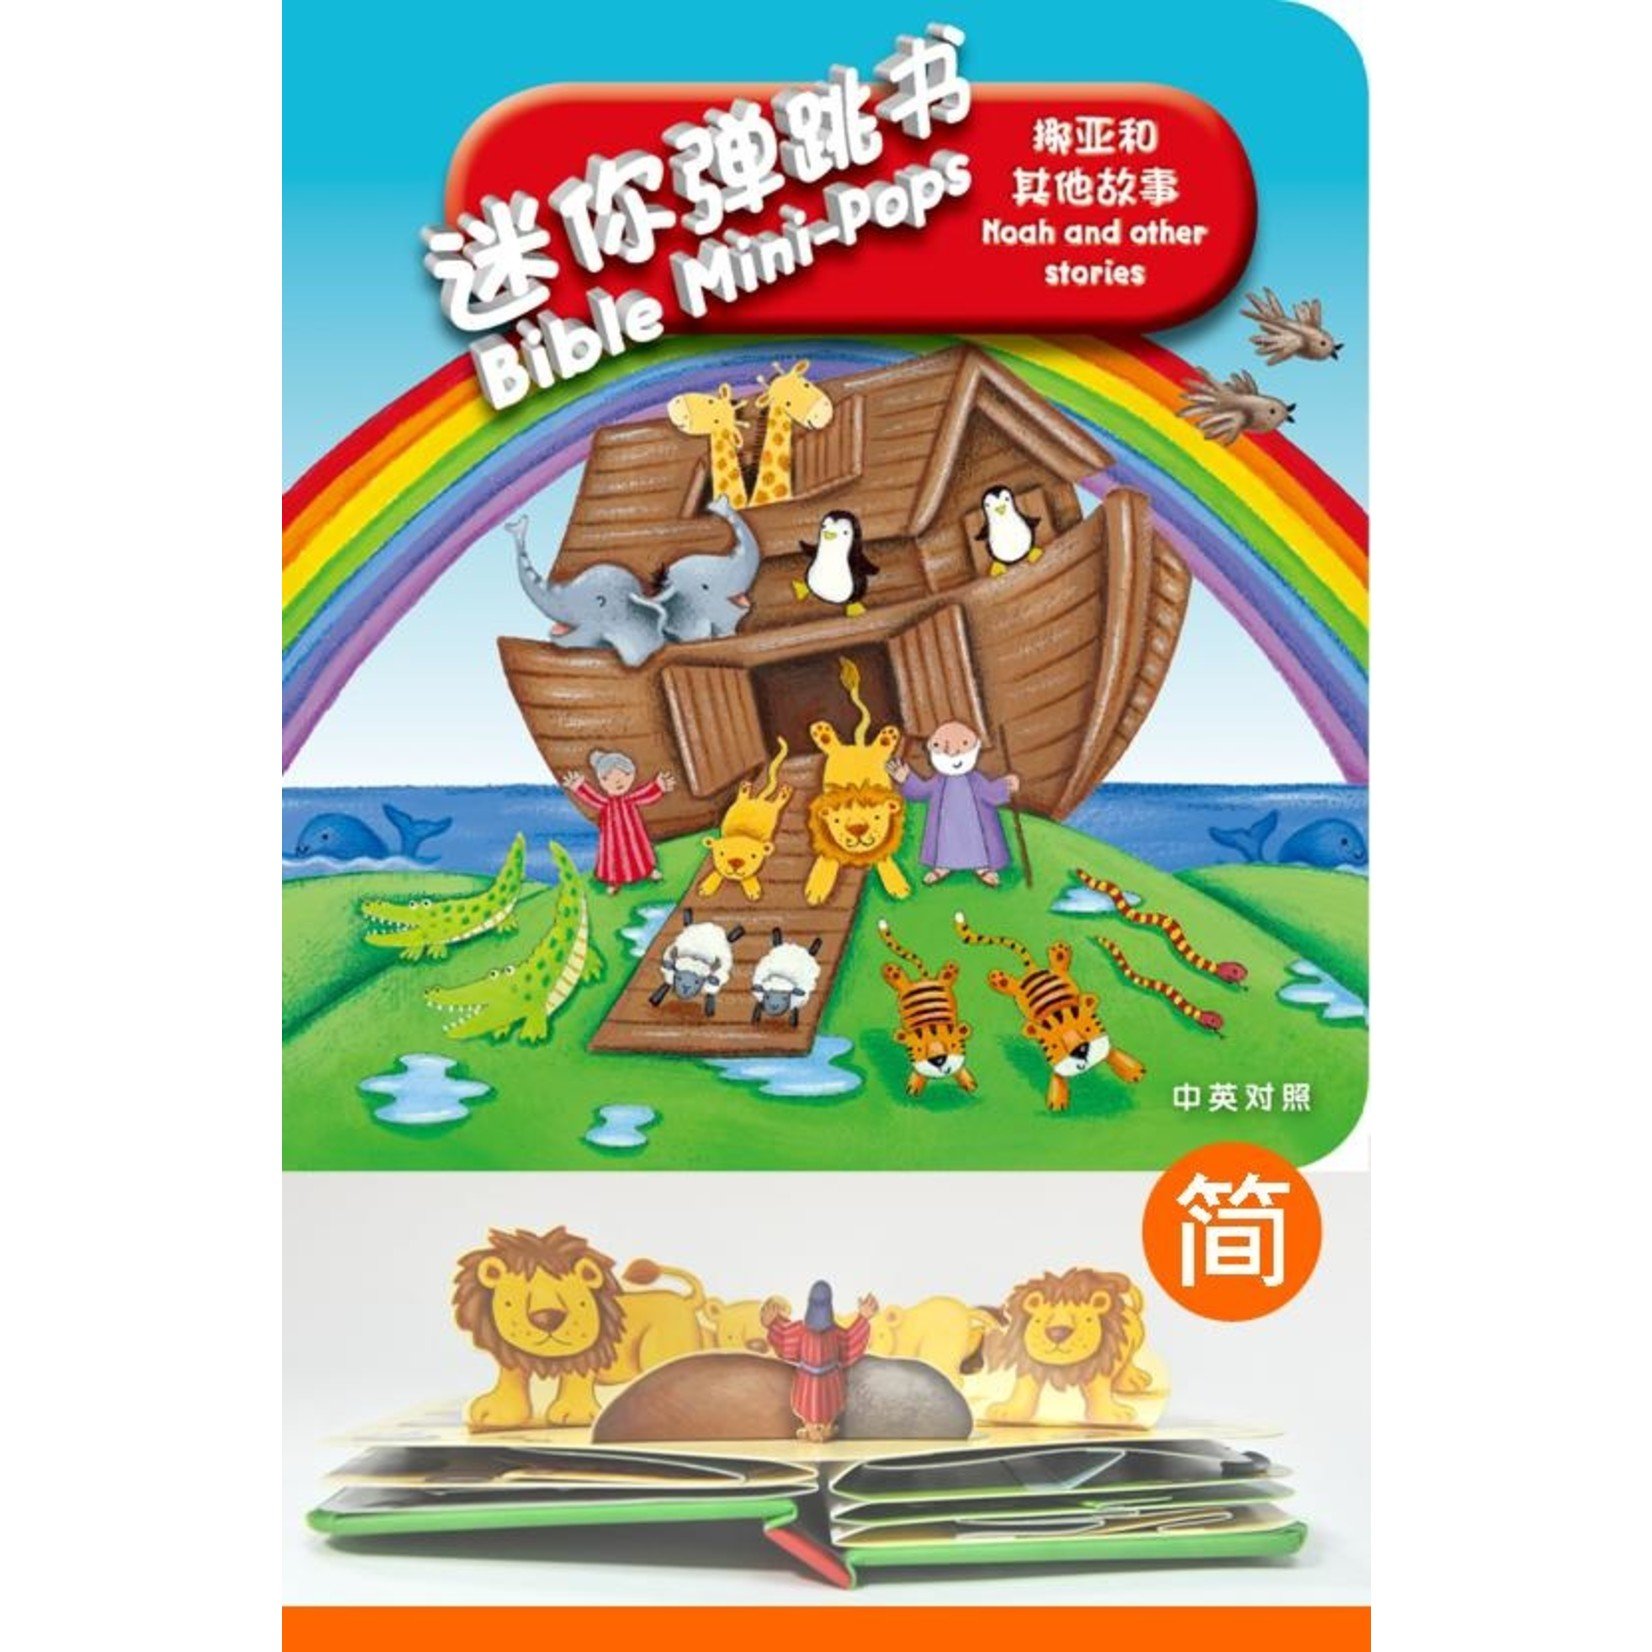 漢語聖經協會 Chinese Bible International 迷你弹跳书：挪亚和其他故事（中英對照）Bible Mini-Pops - Noah and other stories